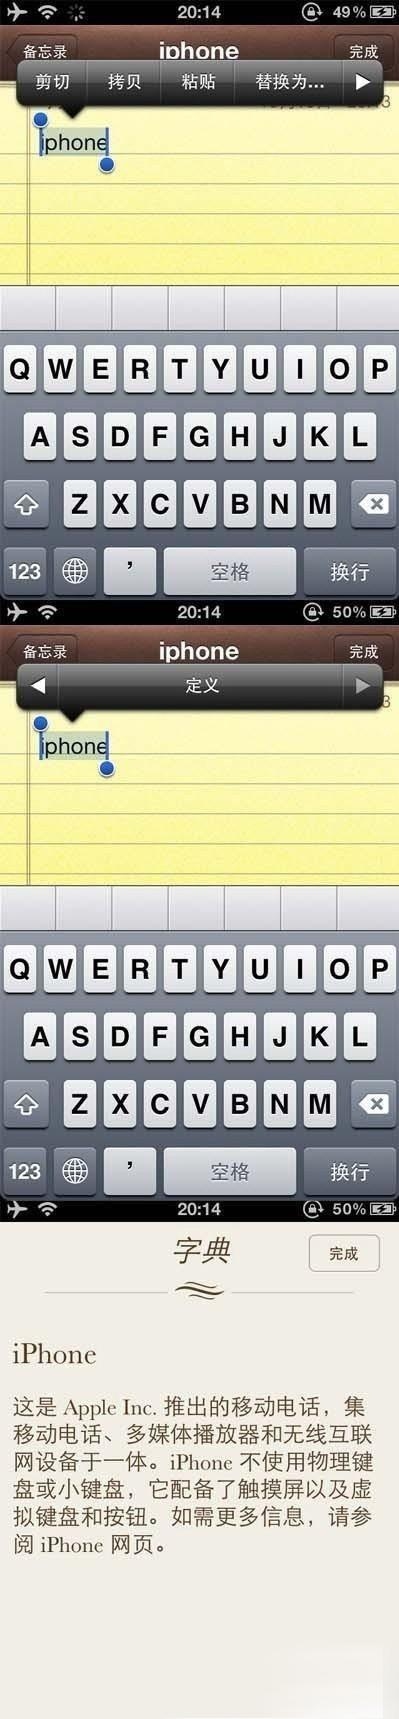 iphone4s字典功能使用教程 三聯